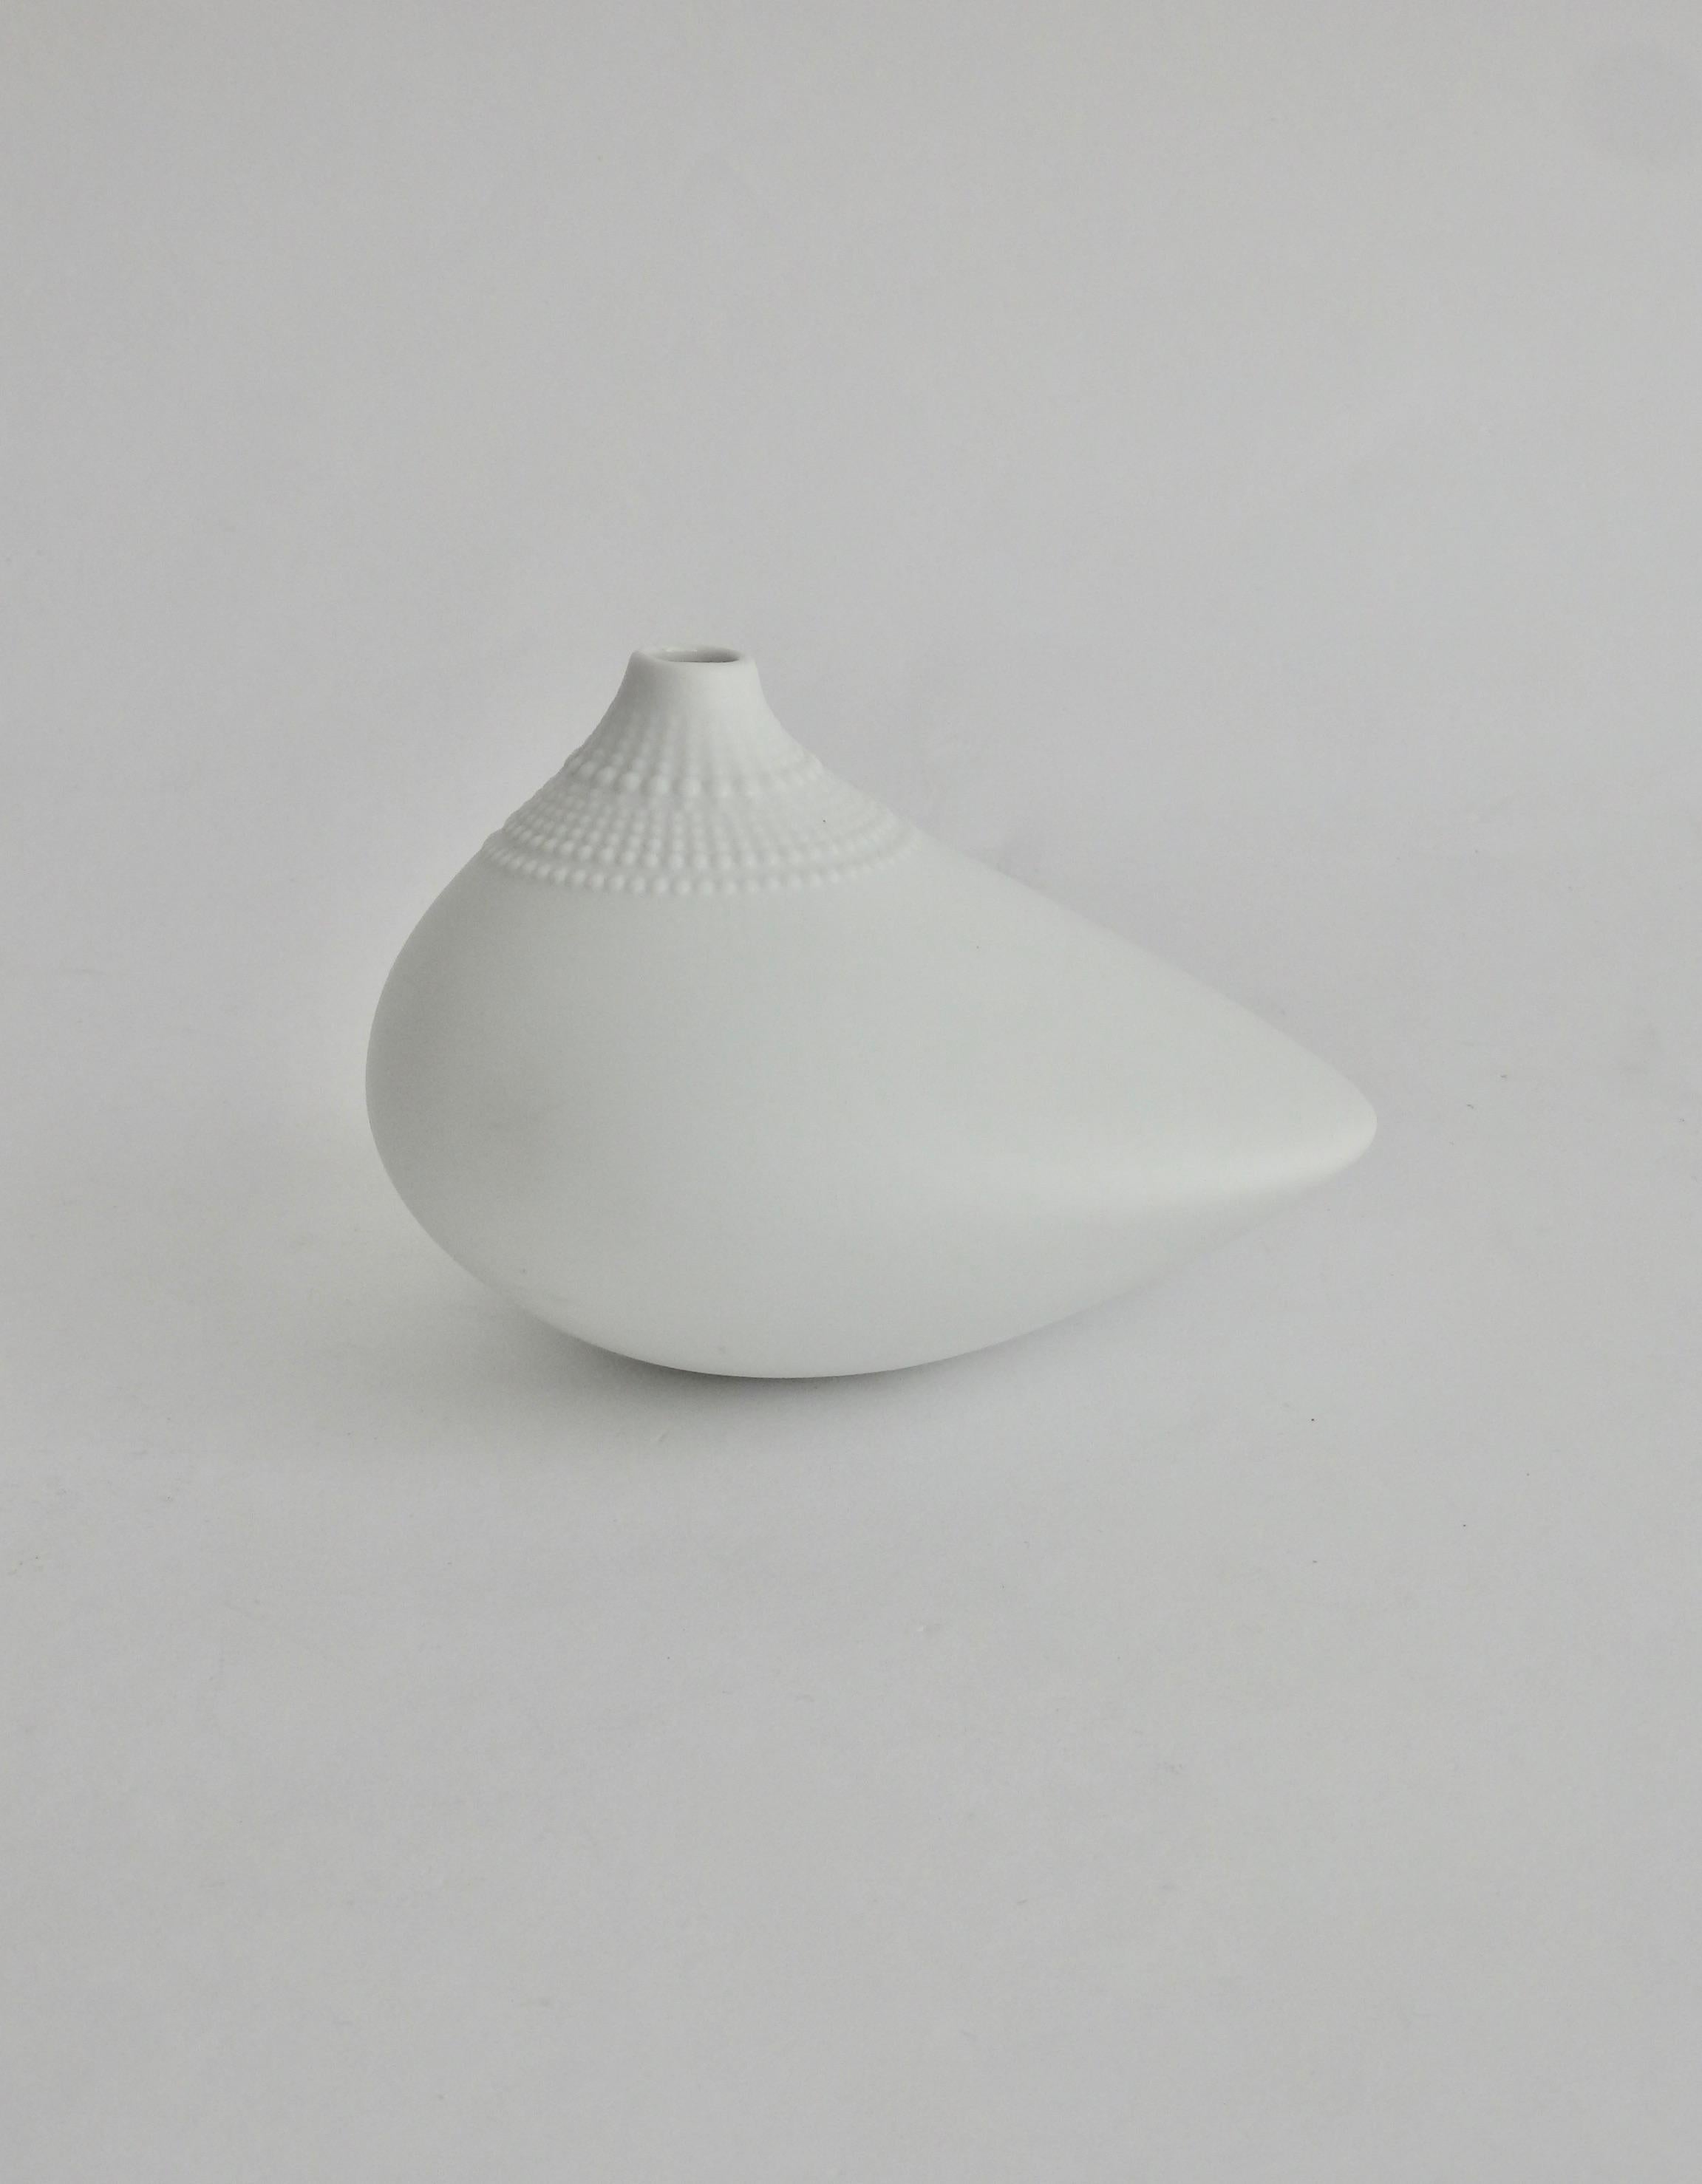 German Tapio Wirkkala Matte White Porcelain Pollo Vase for Rosenthal Studio Line